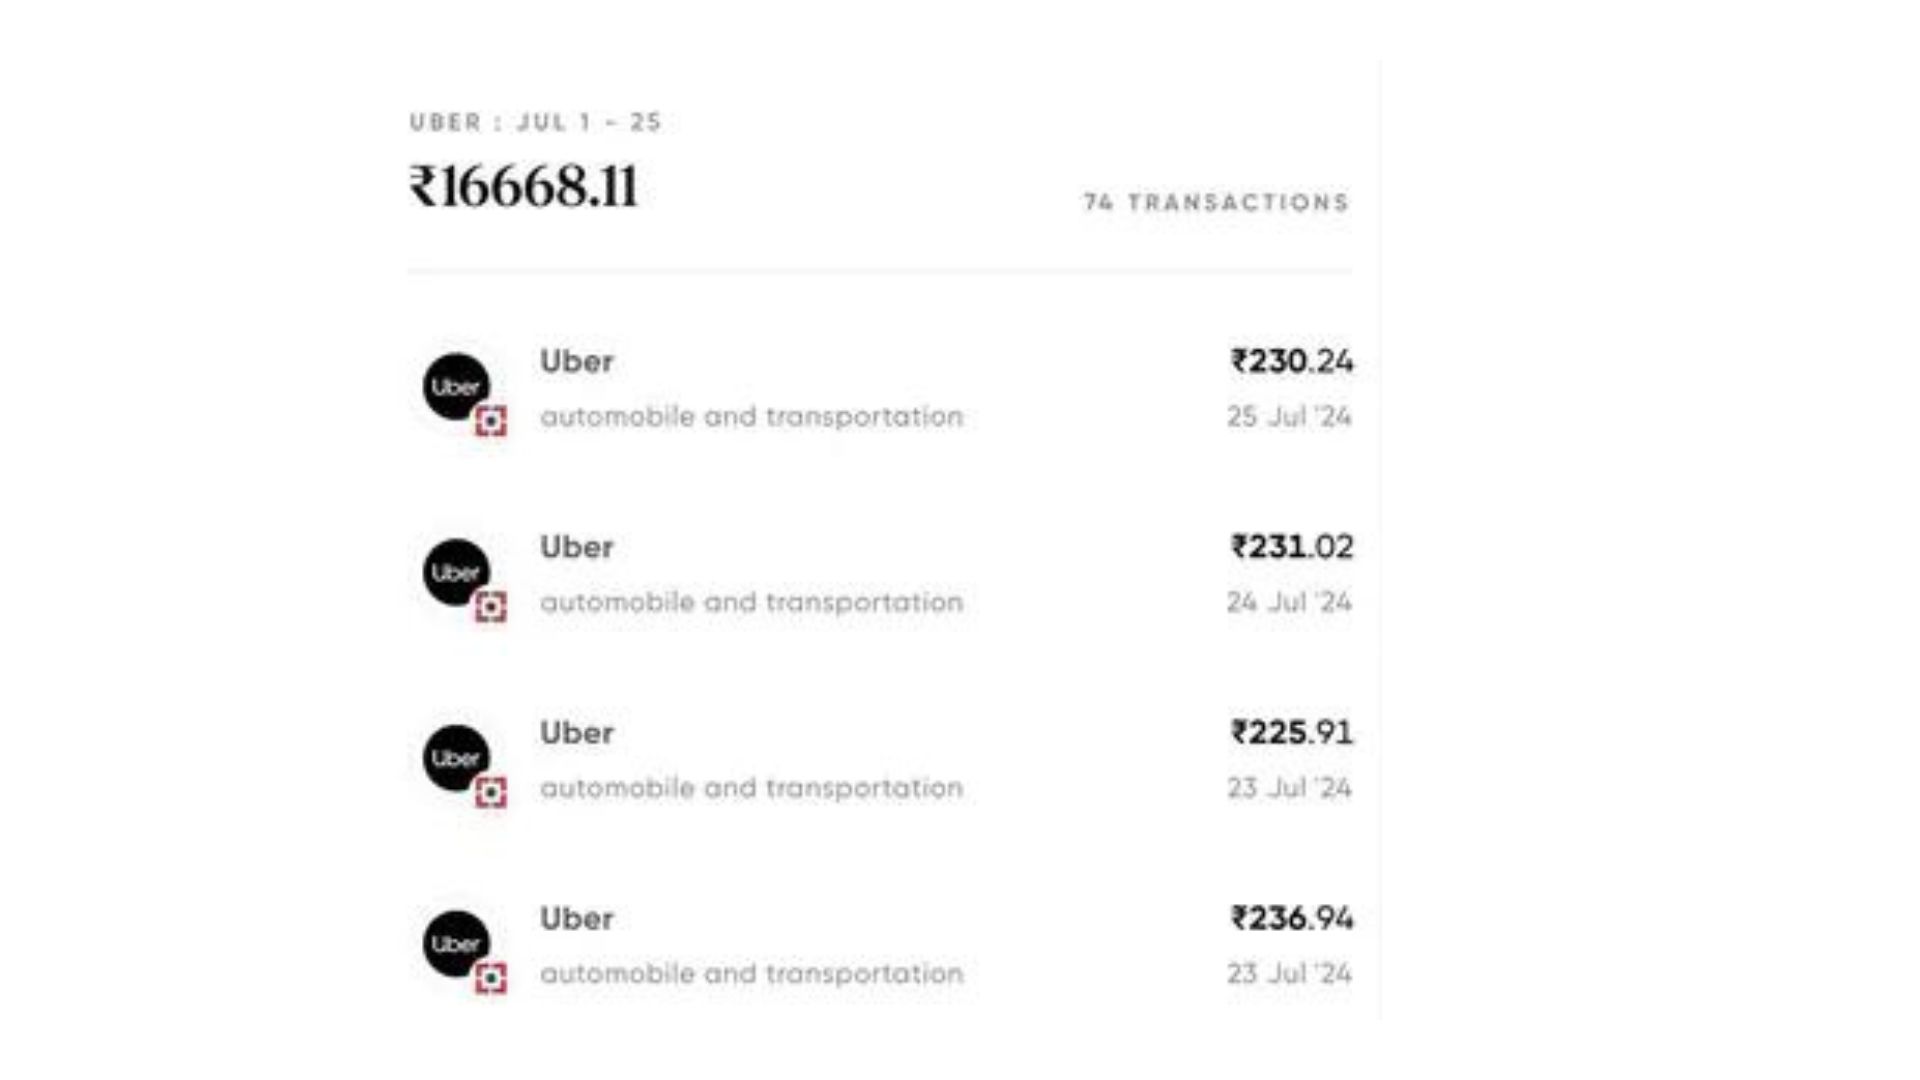 Bengaluru Woman’s Monthly Uber Spend Exceeds ₹16,000, Surpassing Half Her Rent